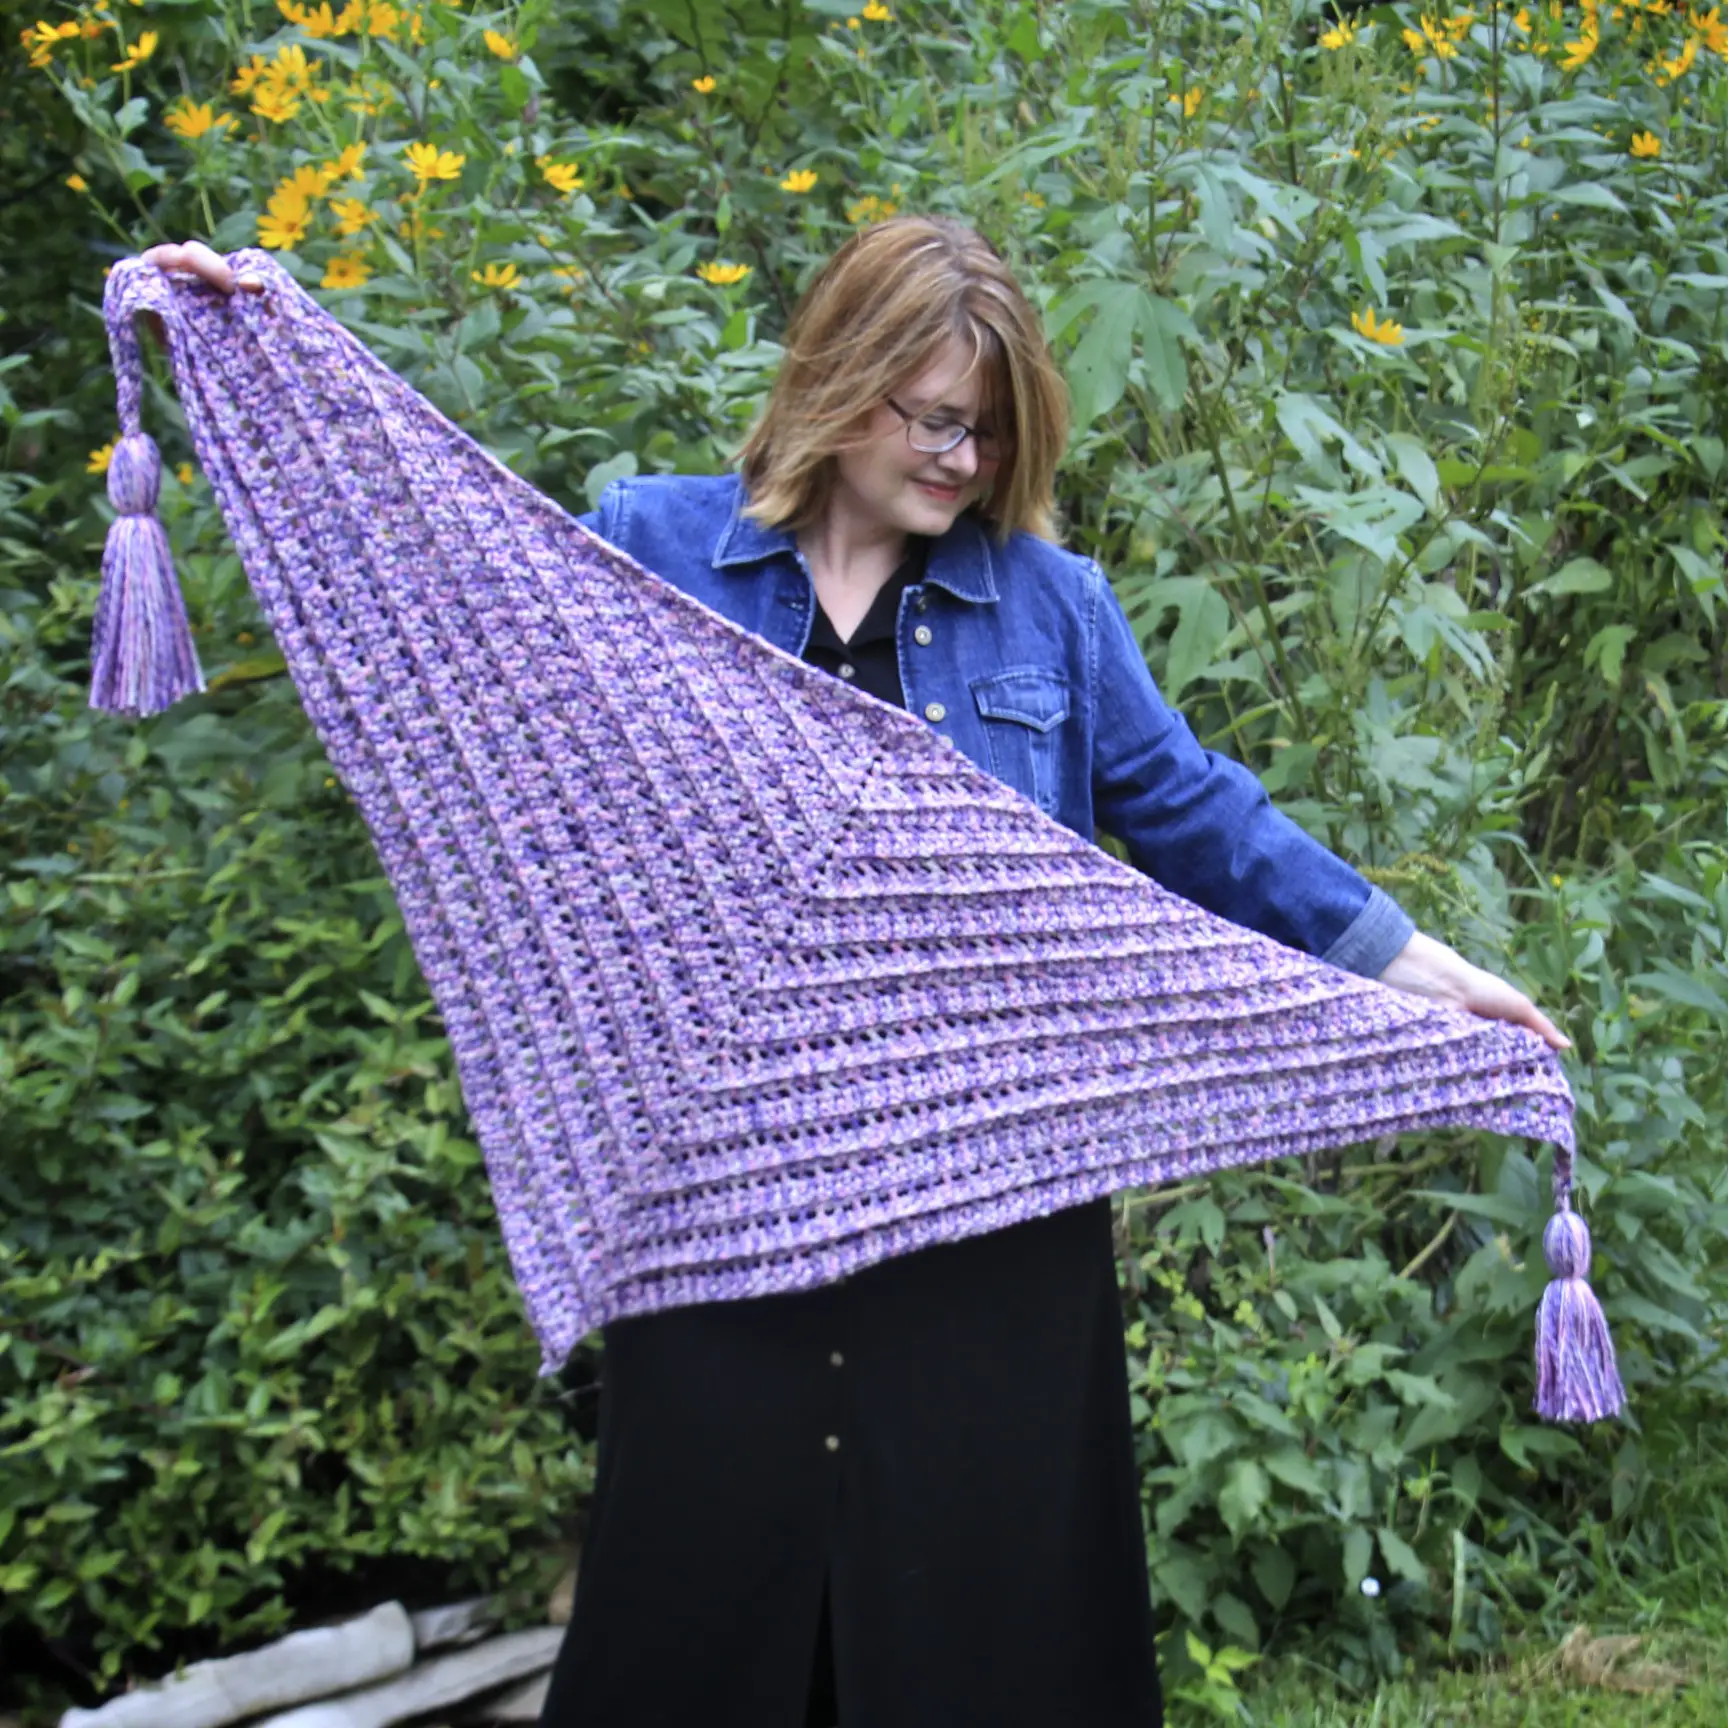 So Long Summer Scarf free crochet pattern